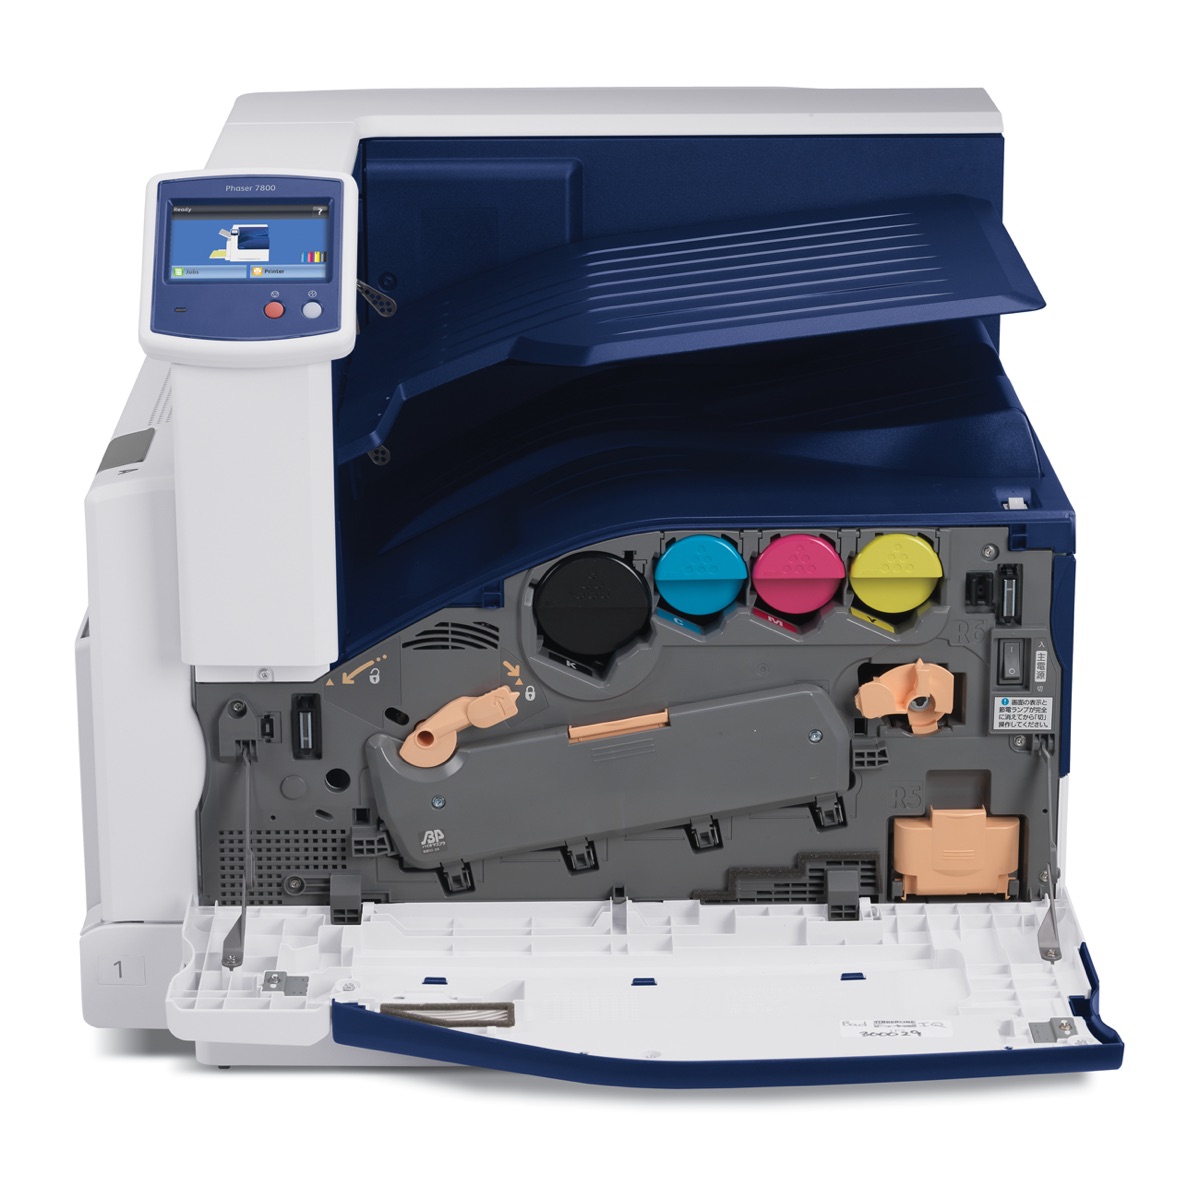 Xerox Printers:  The Xerox REFURBISHED Phaser 7800GX Printer